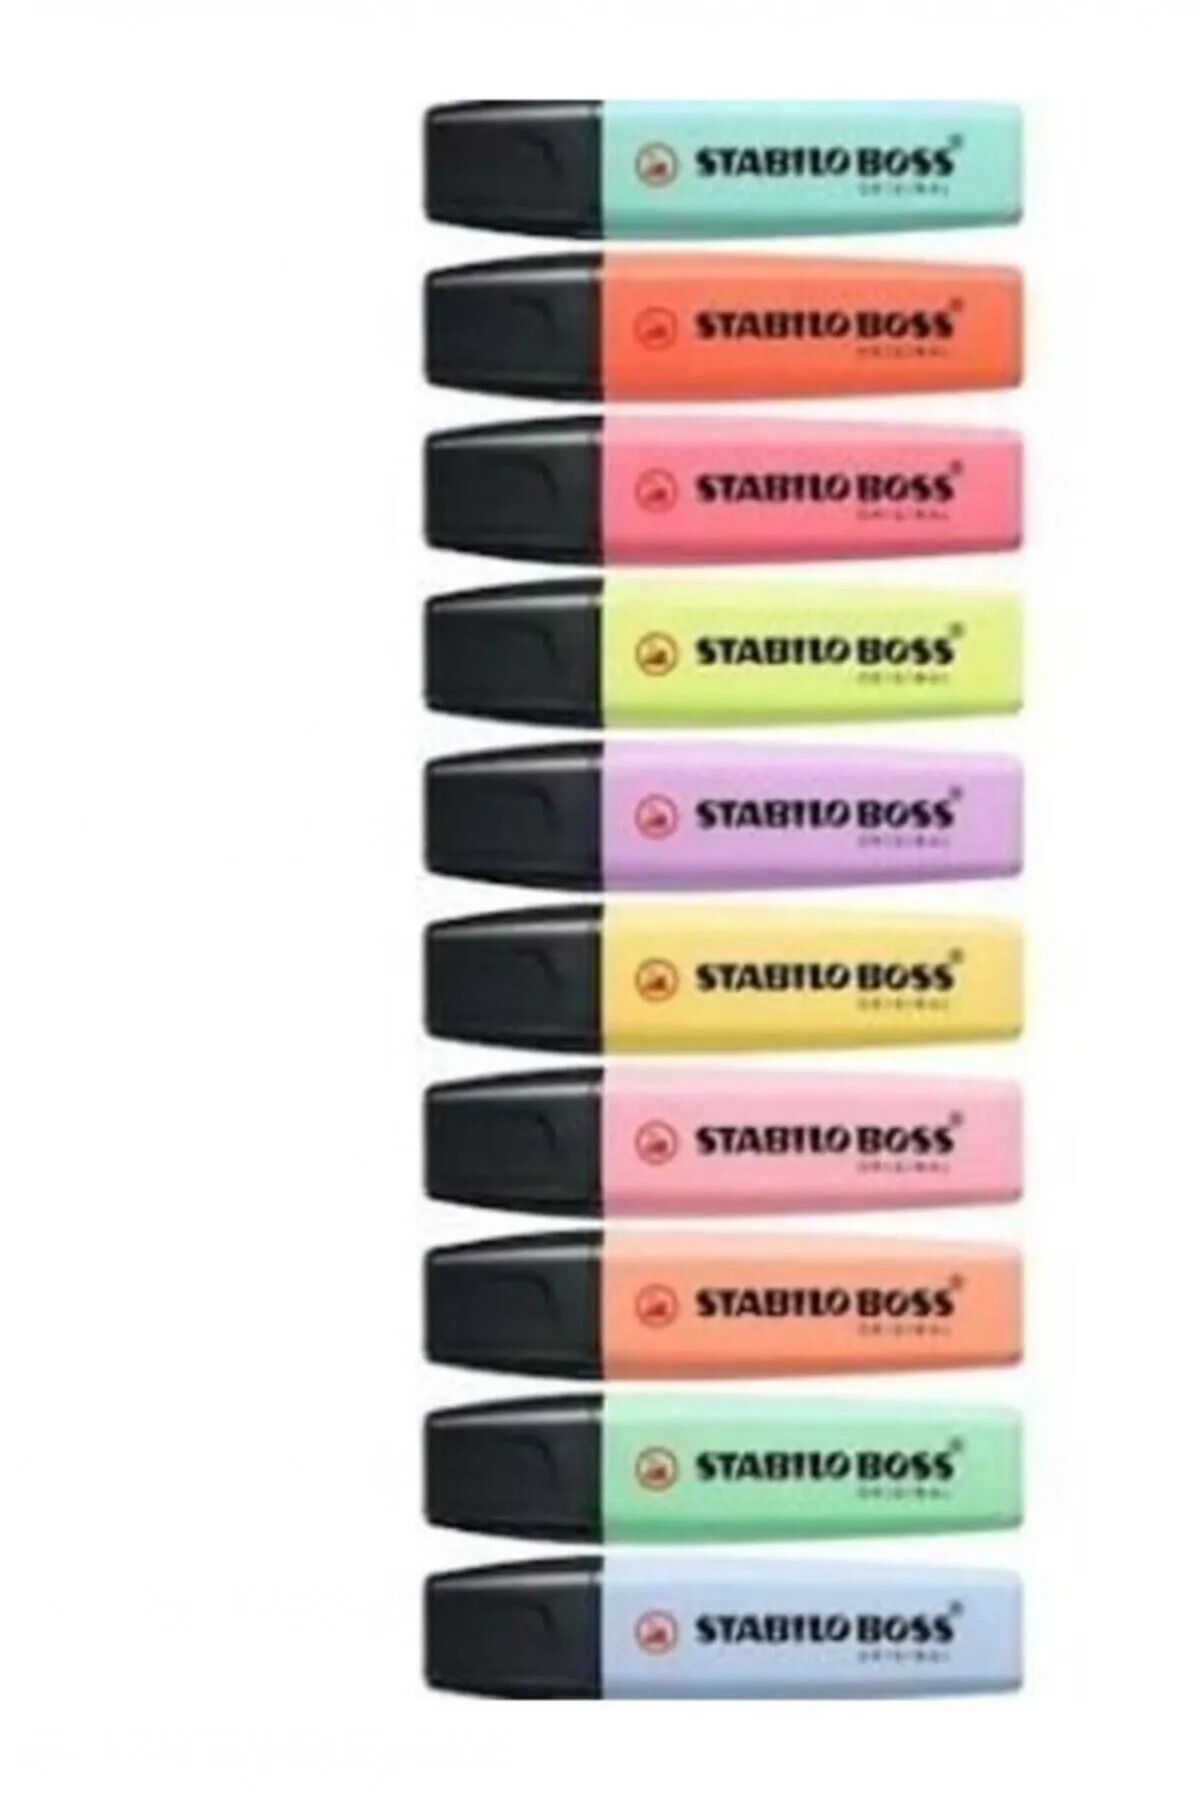 Stabilo Boss Original Fosforlu Kalem 10 Pastel Renk Set